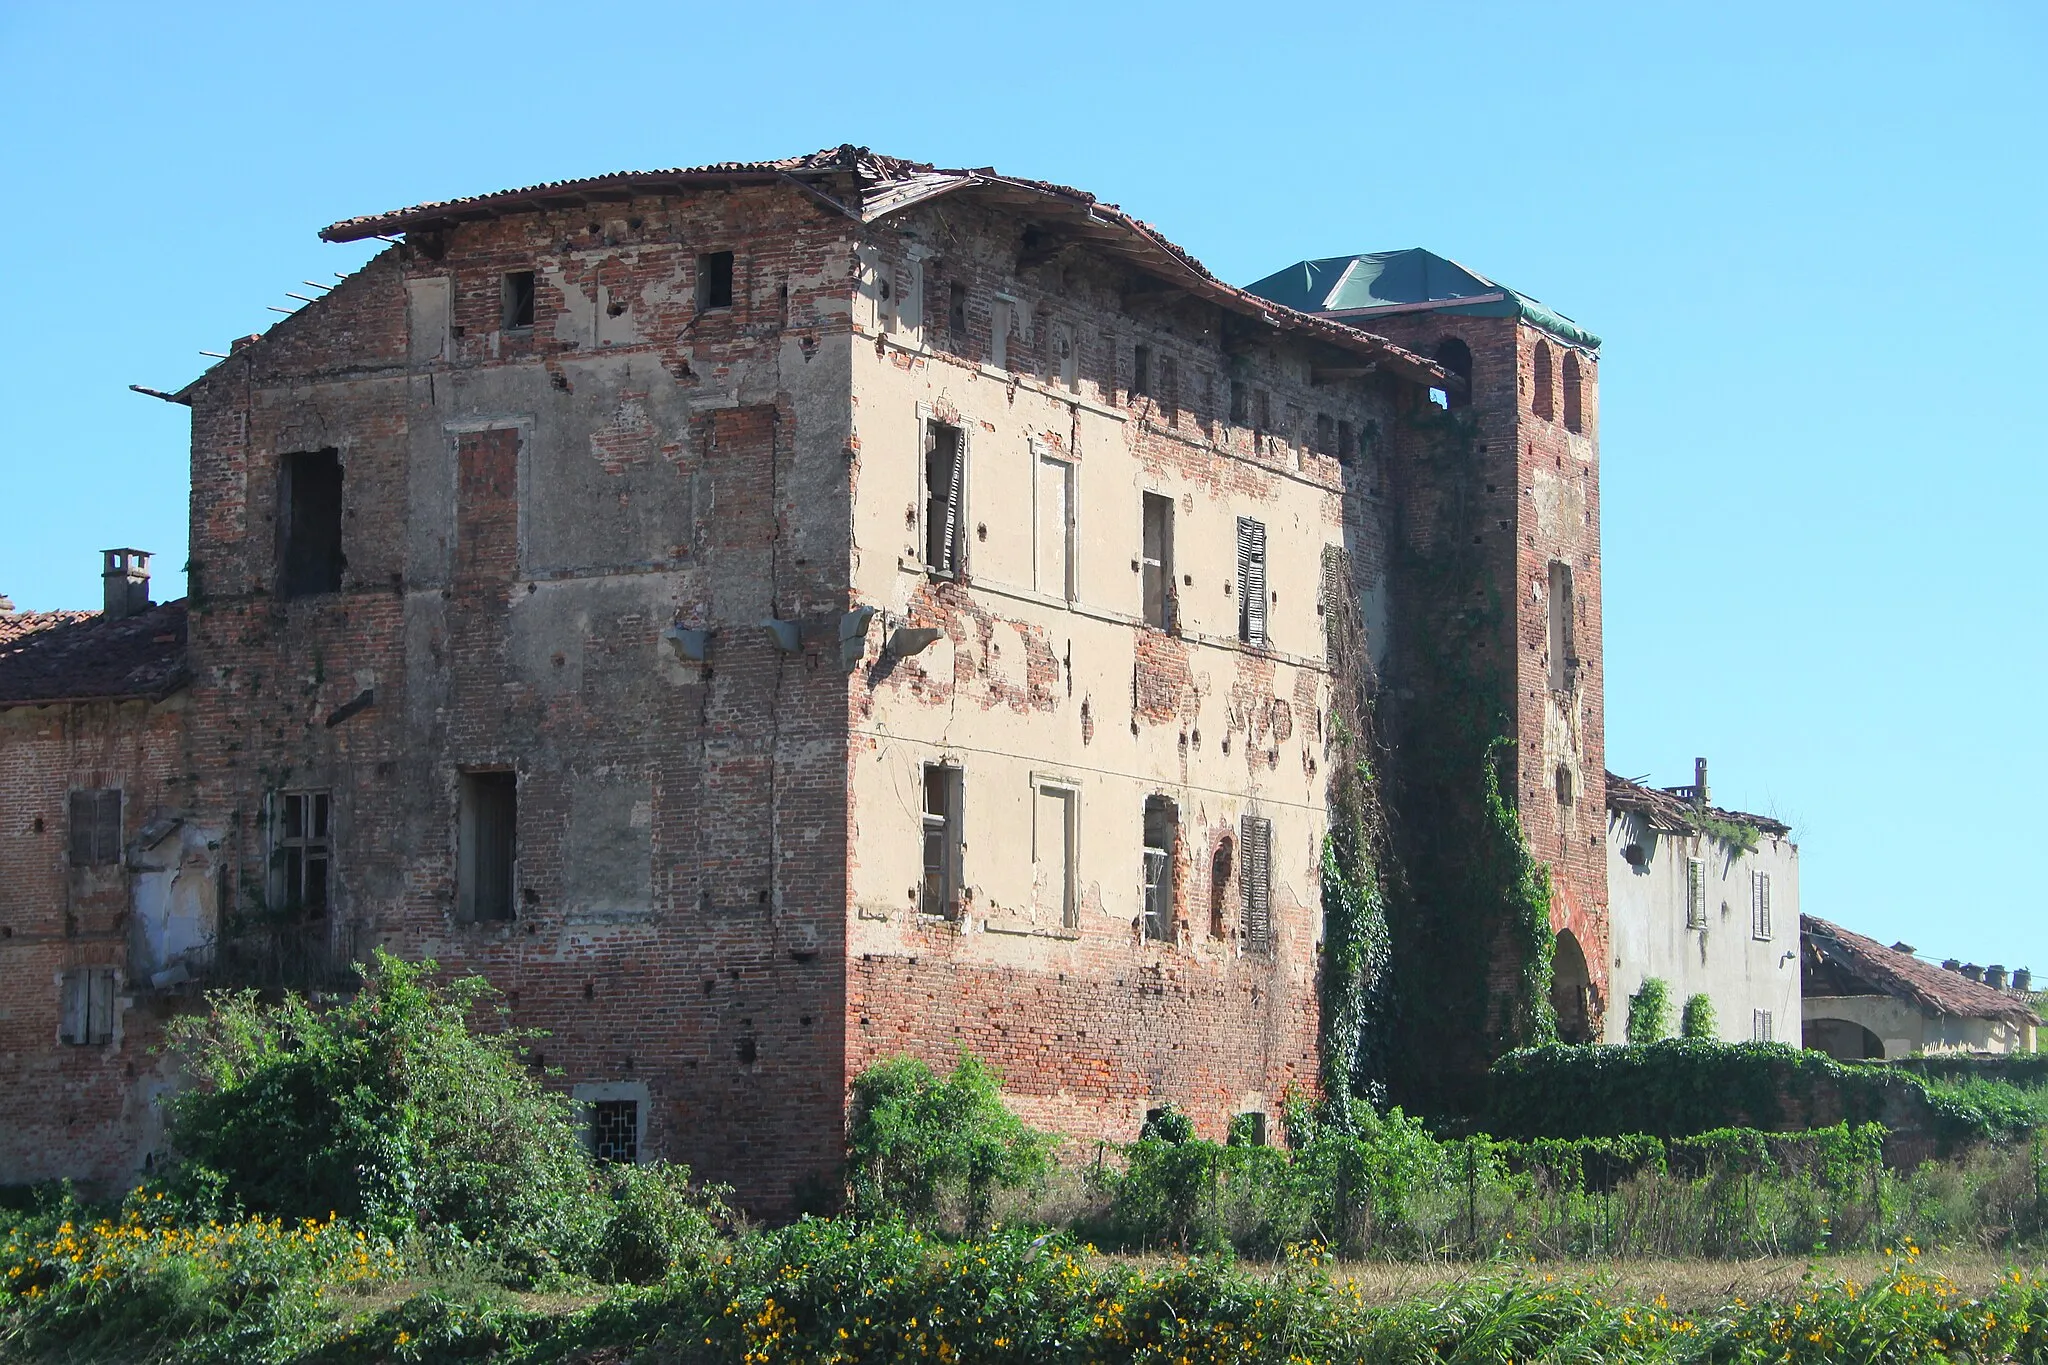 Bild von Villanova Monferrato